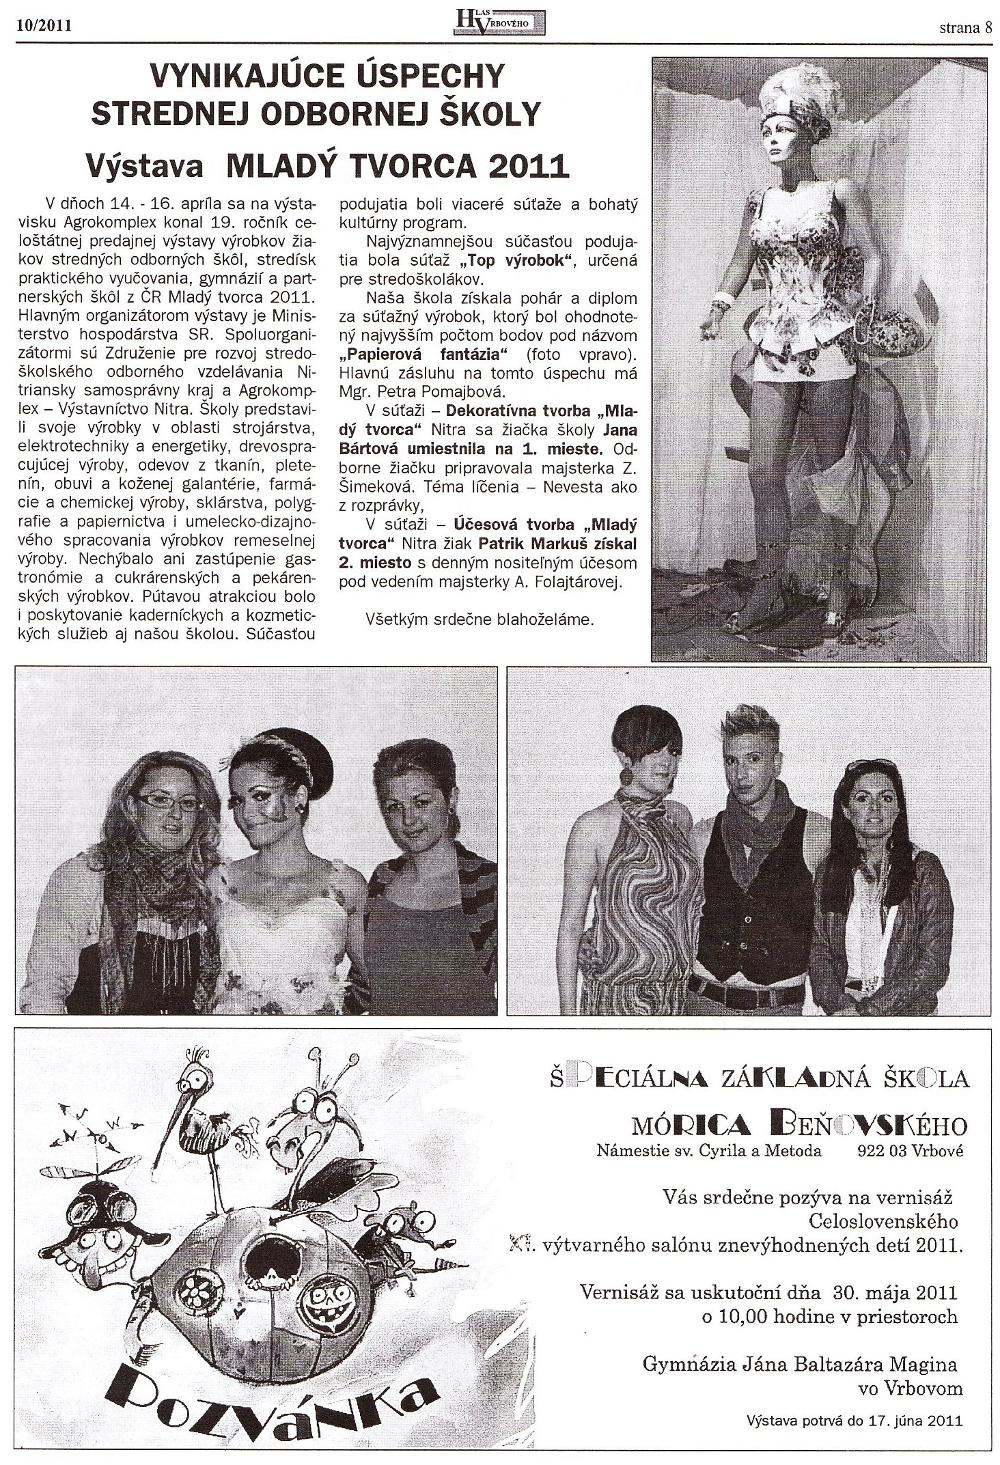 Hlas Vrbového 10/2011, strana 8